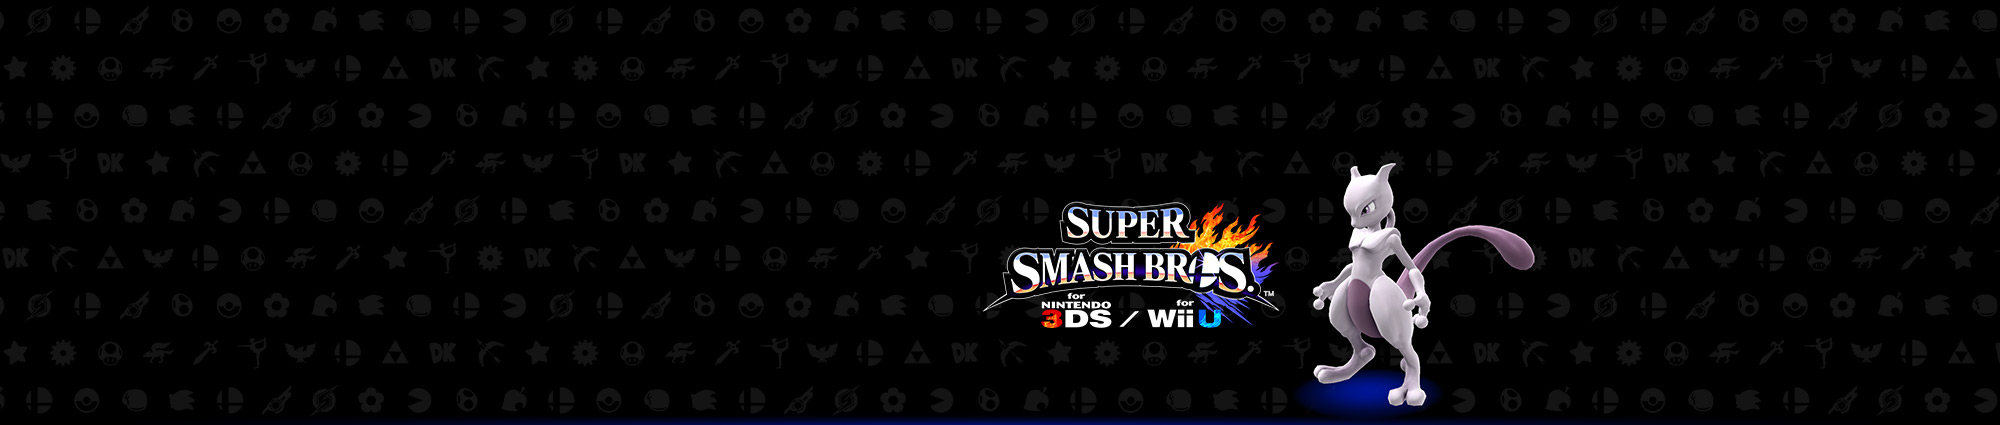 Club Nintendo-actie: Super Smash Bros.